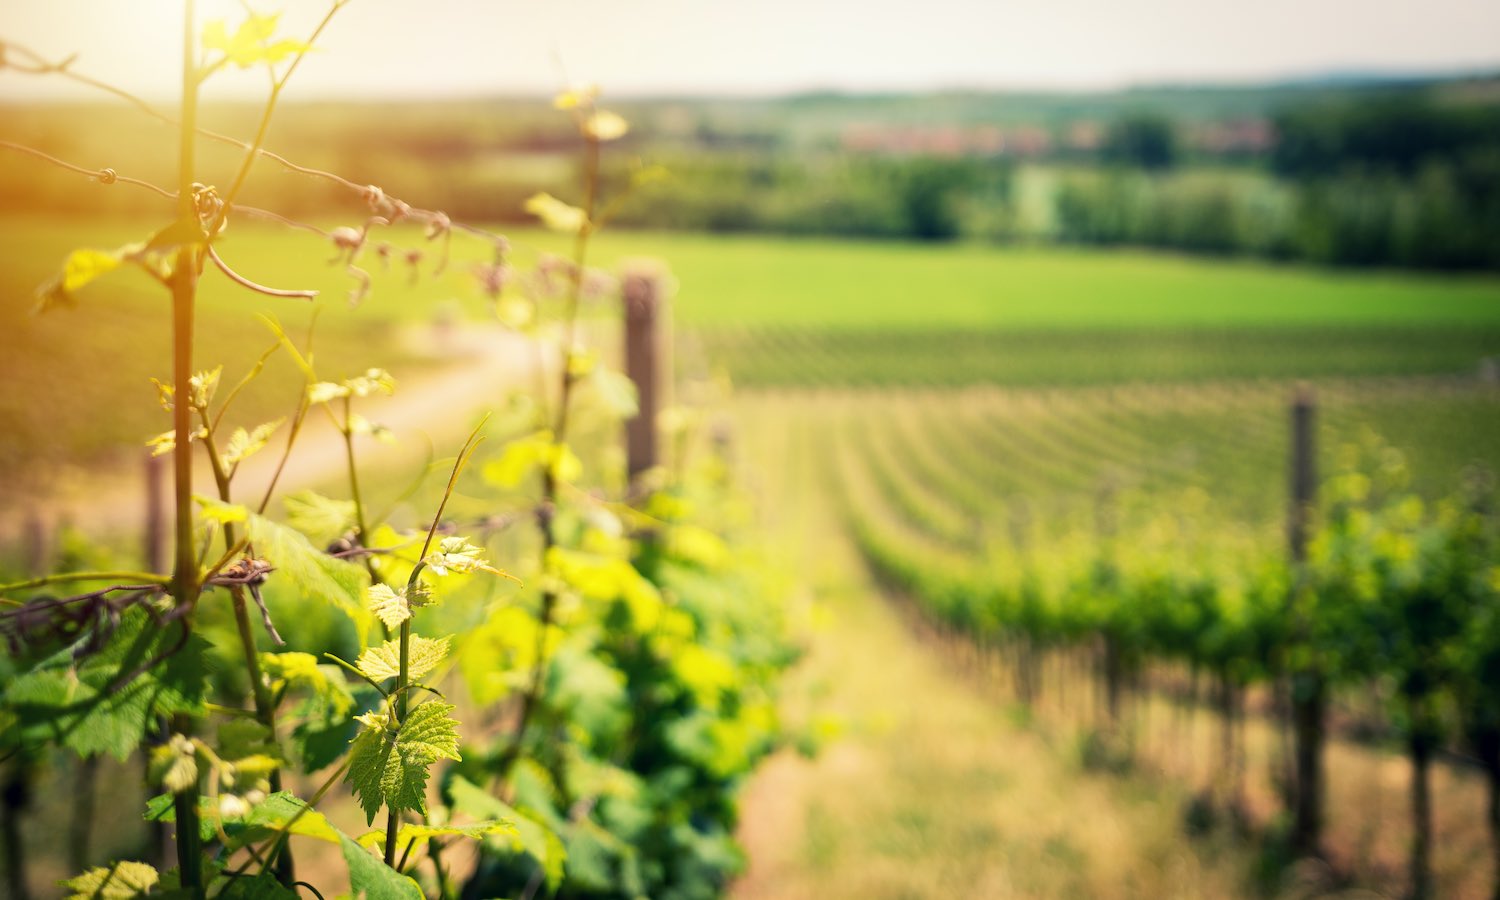 托德干农场的白葡萄酒解释了为什么葡萄酒行业需要更多的透明度和为什么他的葡萄酒必须达到如此高的标准